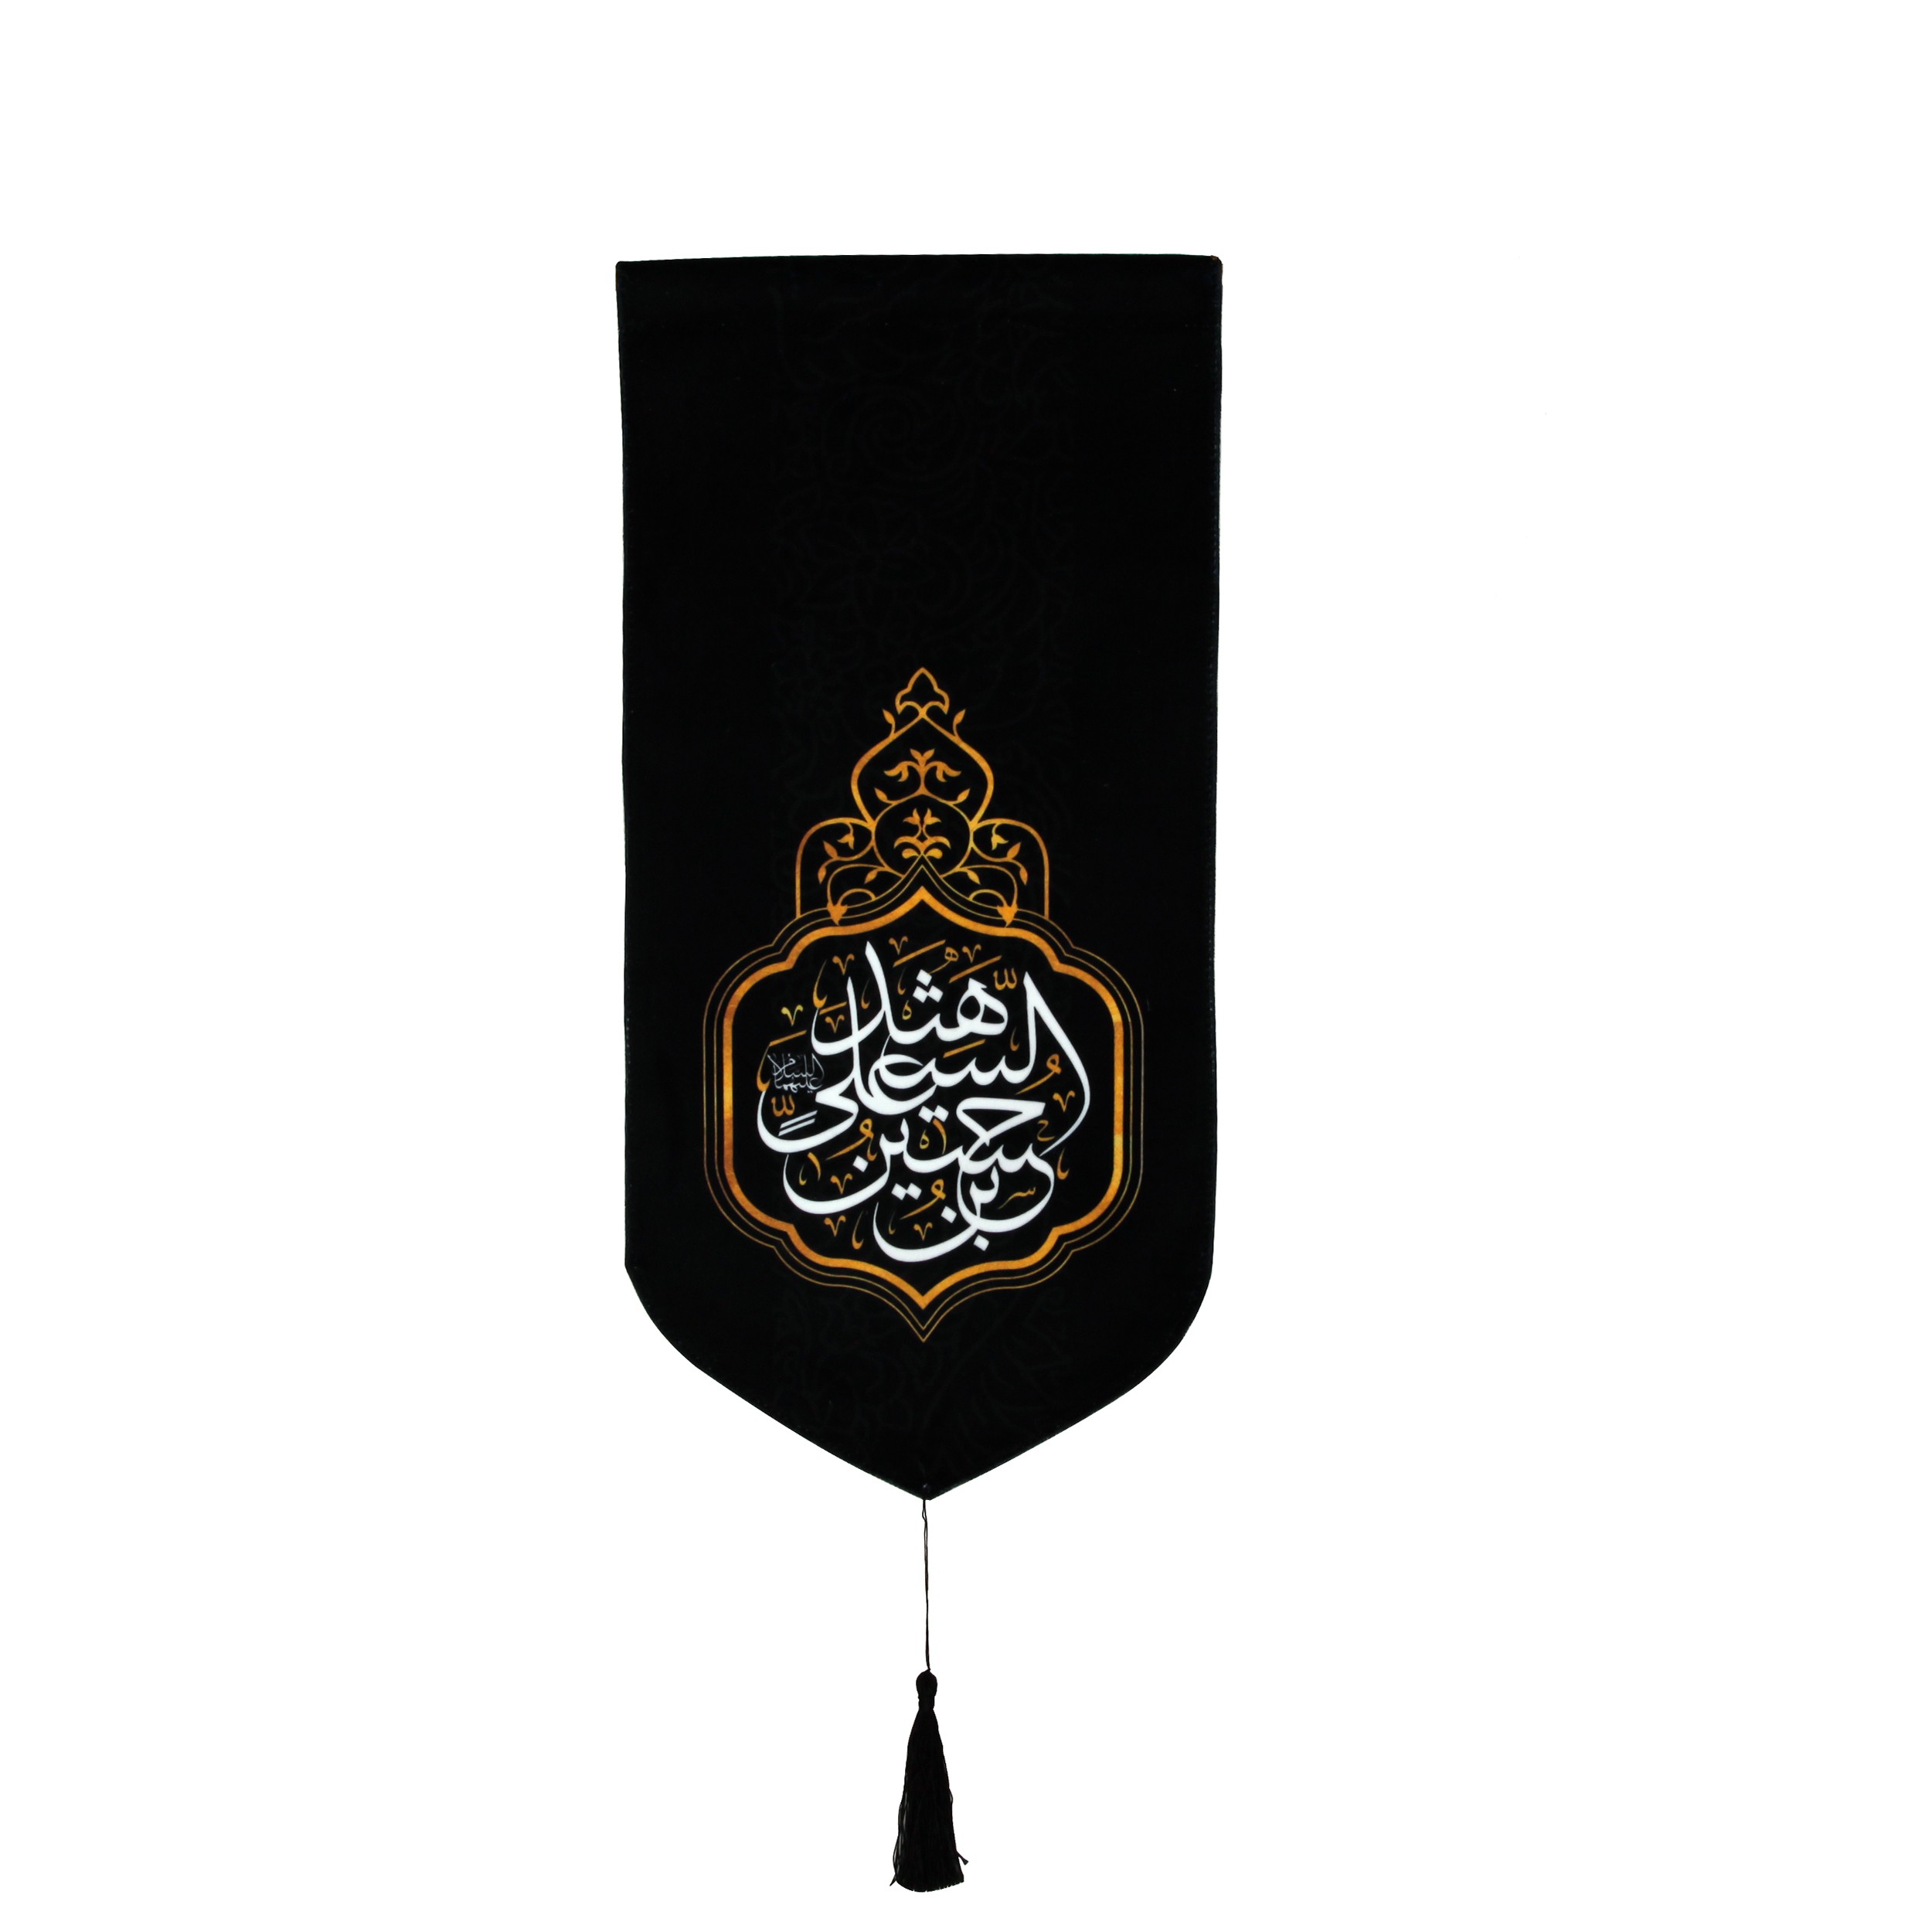 پرچم مدل عزاداری محرم حسین بن علی شهید کد 40001172